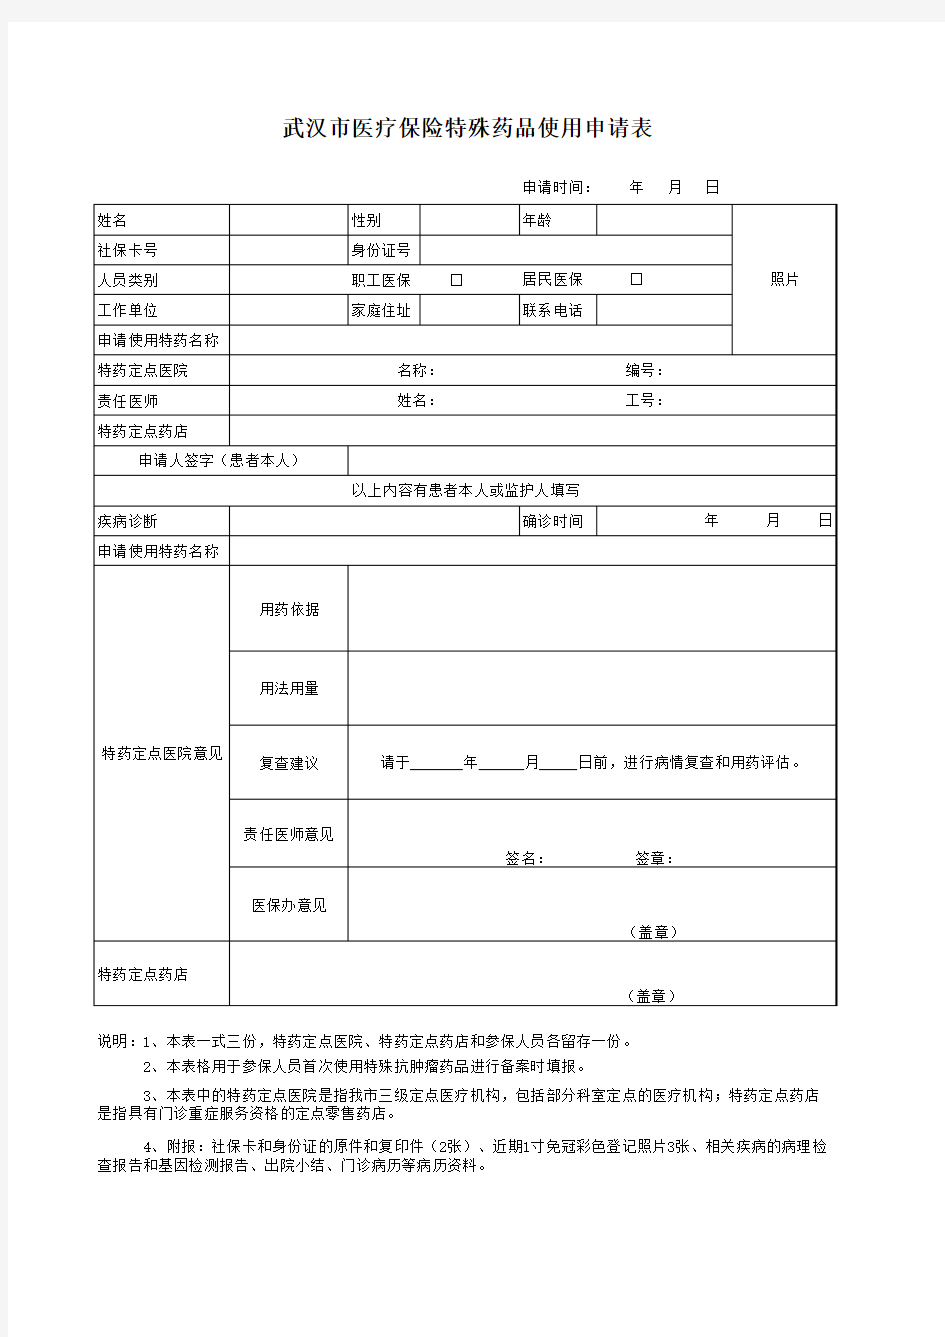 武汉市医疗保险特殊药品使用申请表